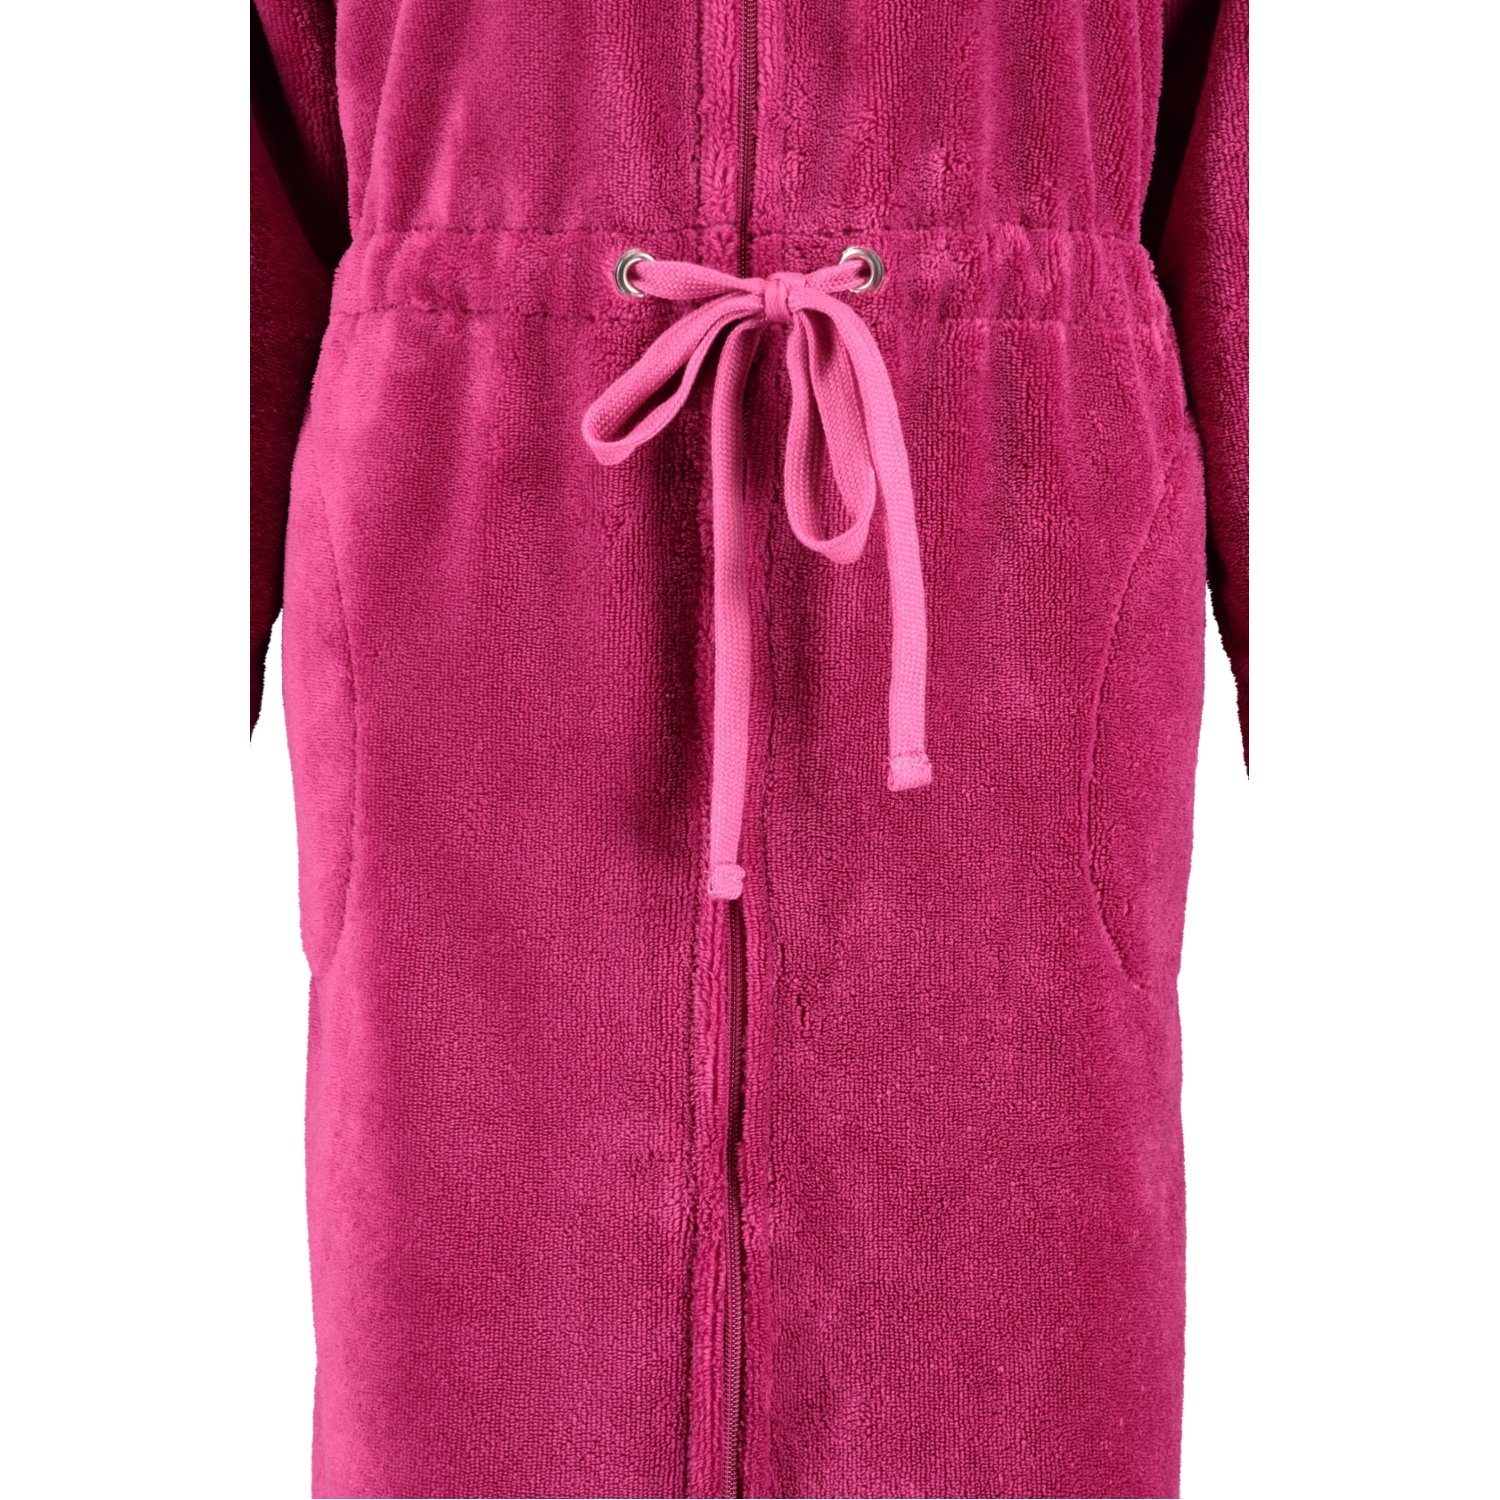 Reißverschluss, Cawö pink Cawö Home Baumwollmischung, Kurzform, Damenbademantel Reißverschluss 822, 22